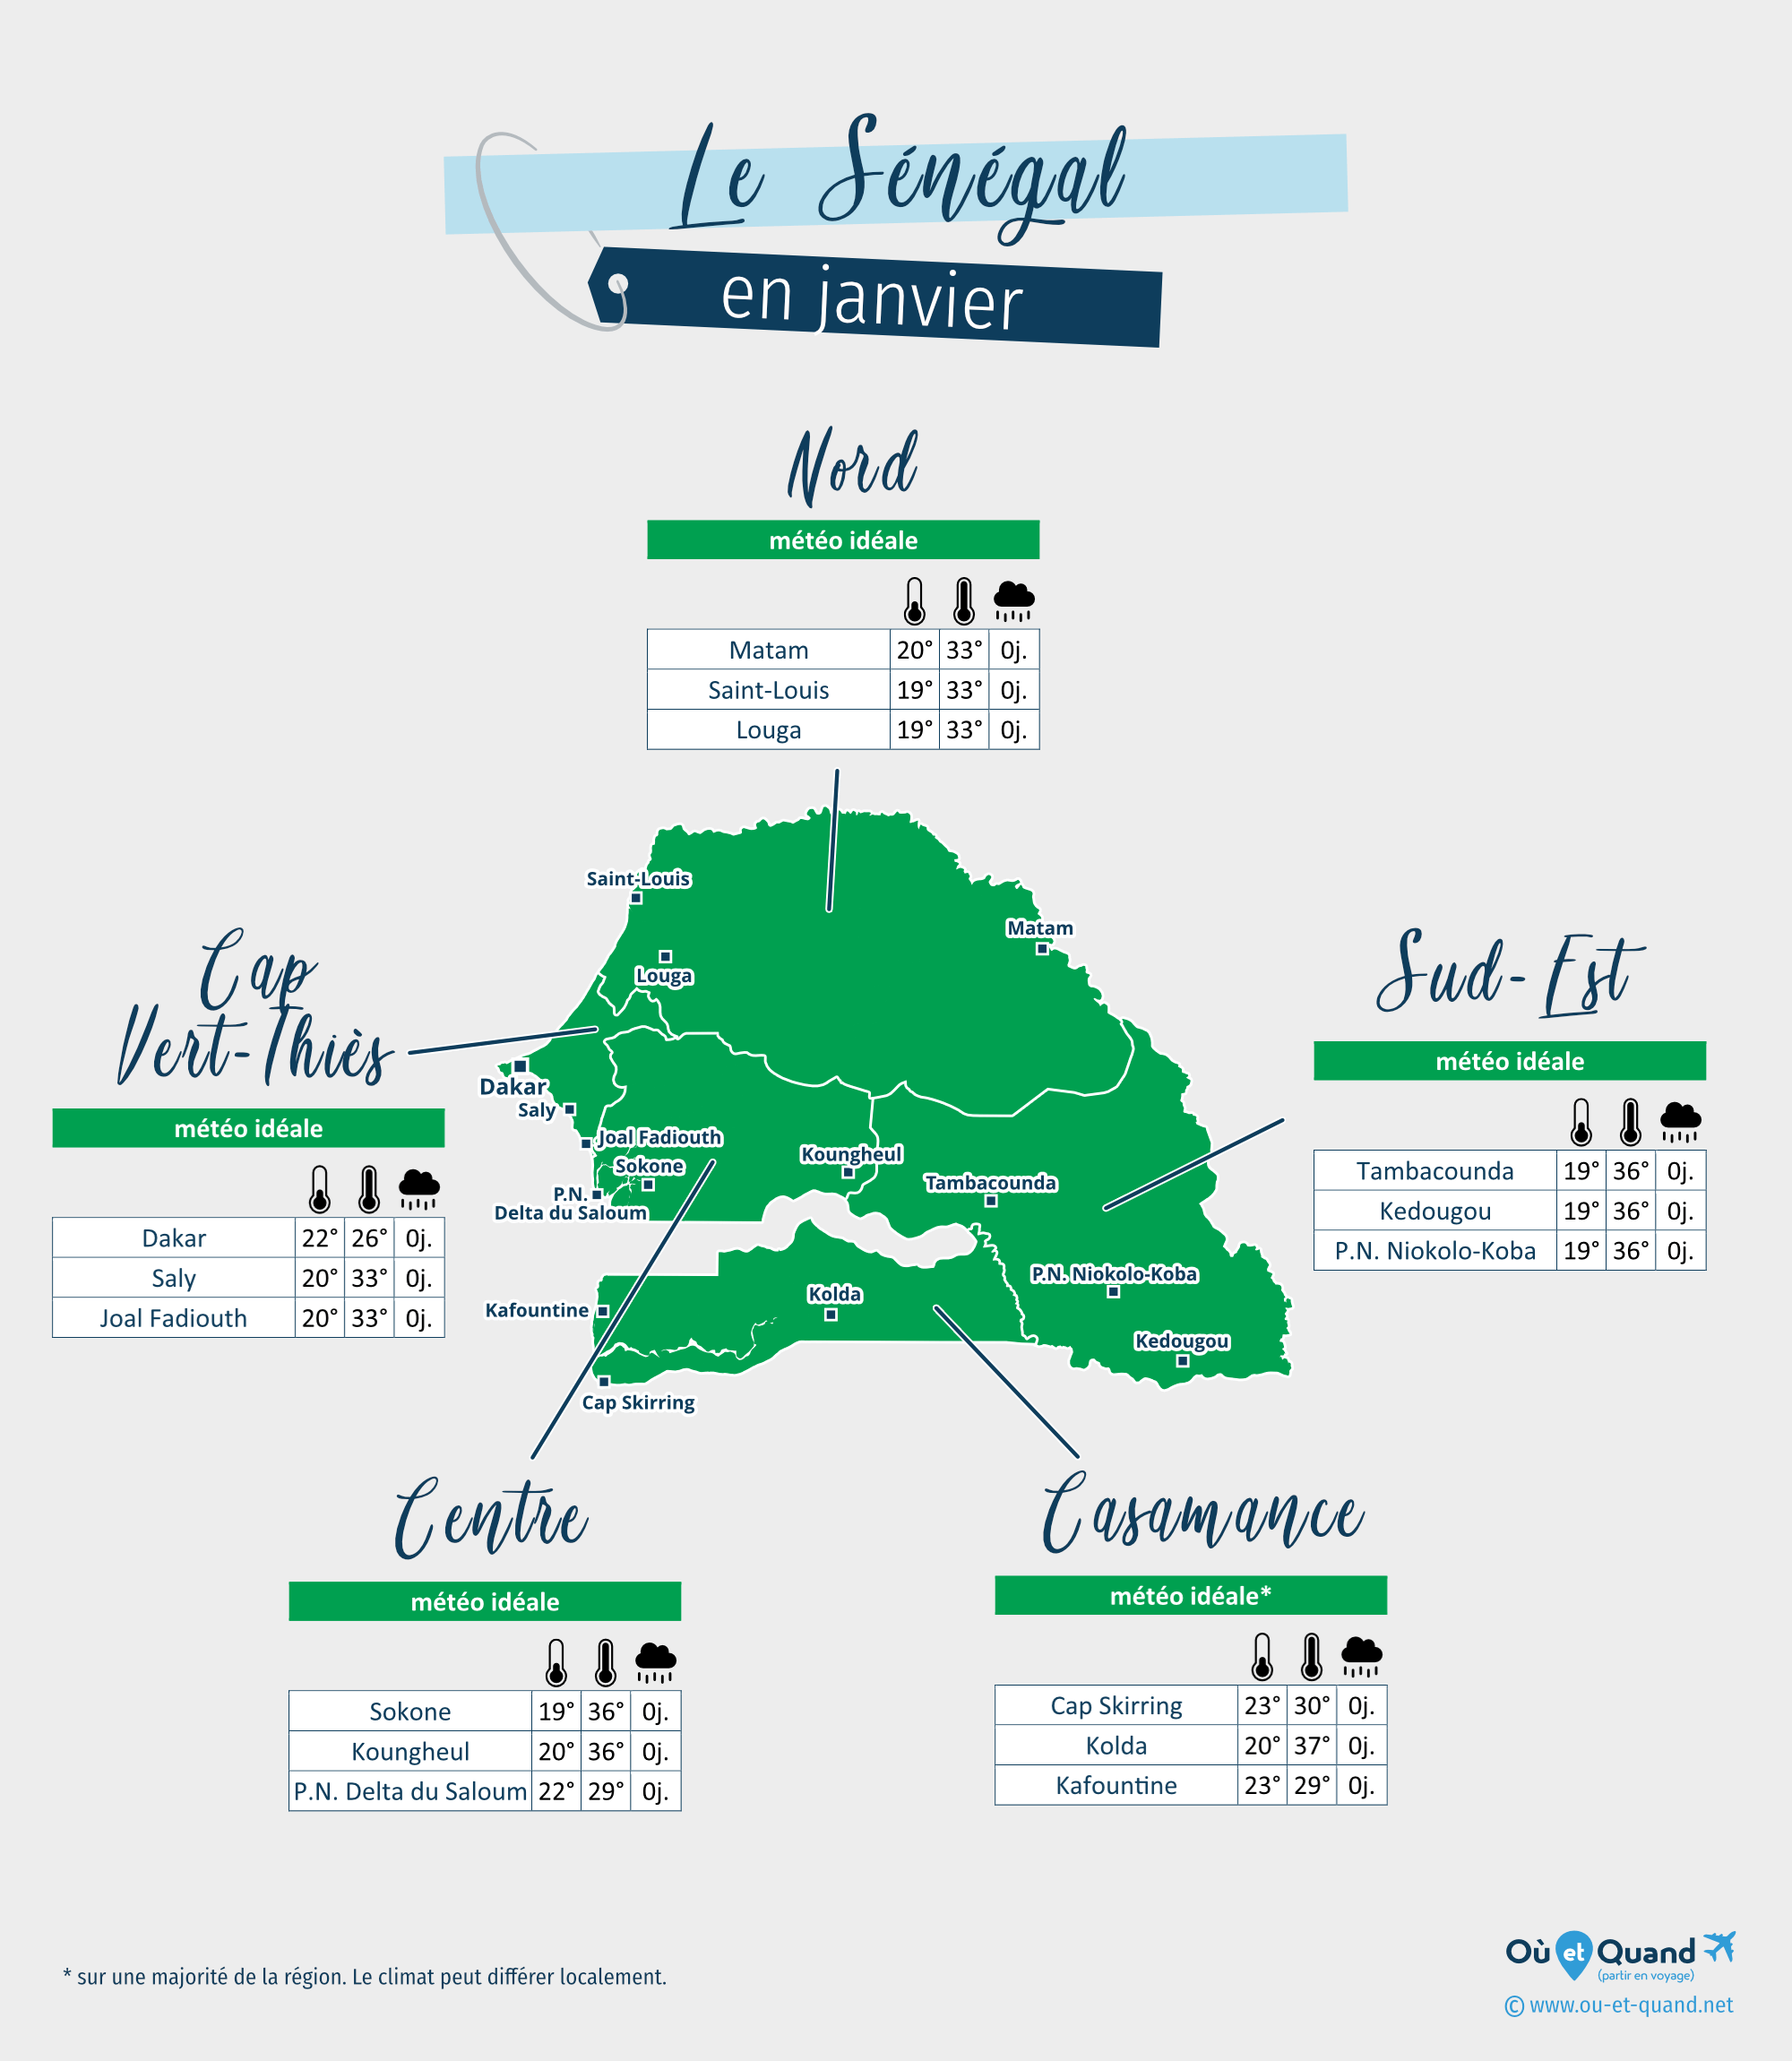 Carte de la météo en janvier dans les régions du Sénégal